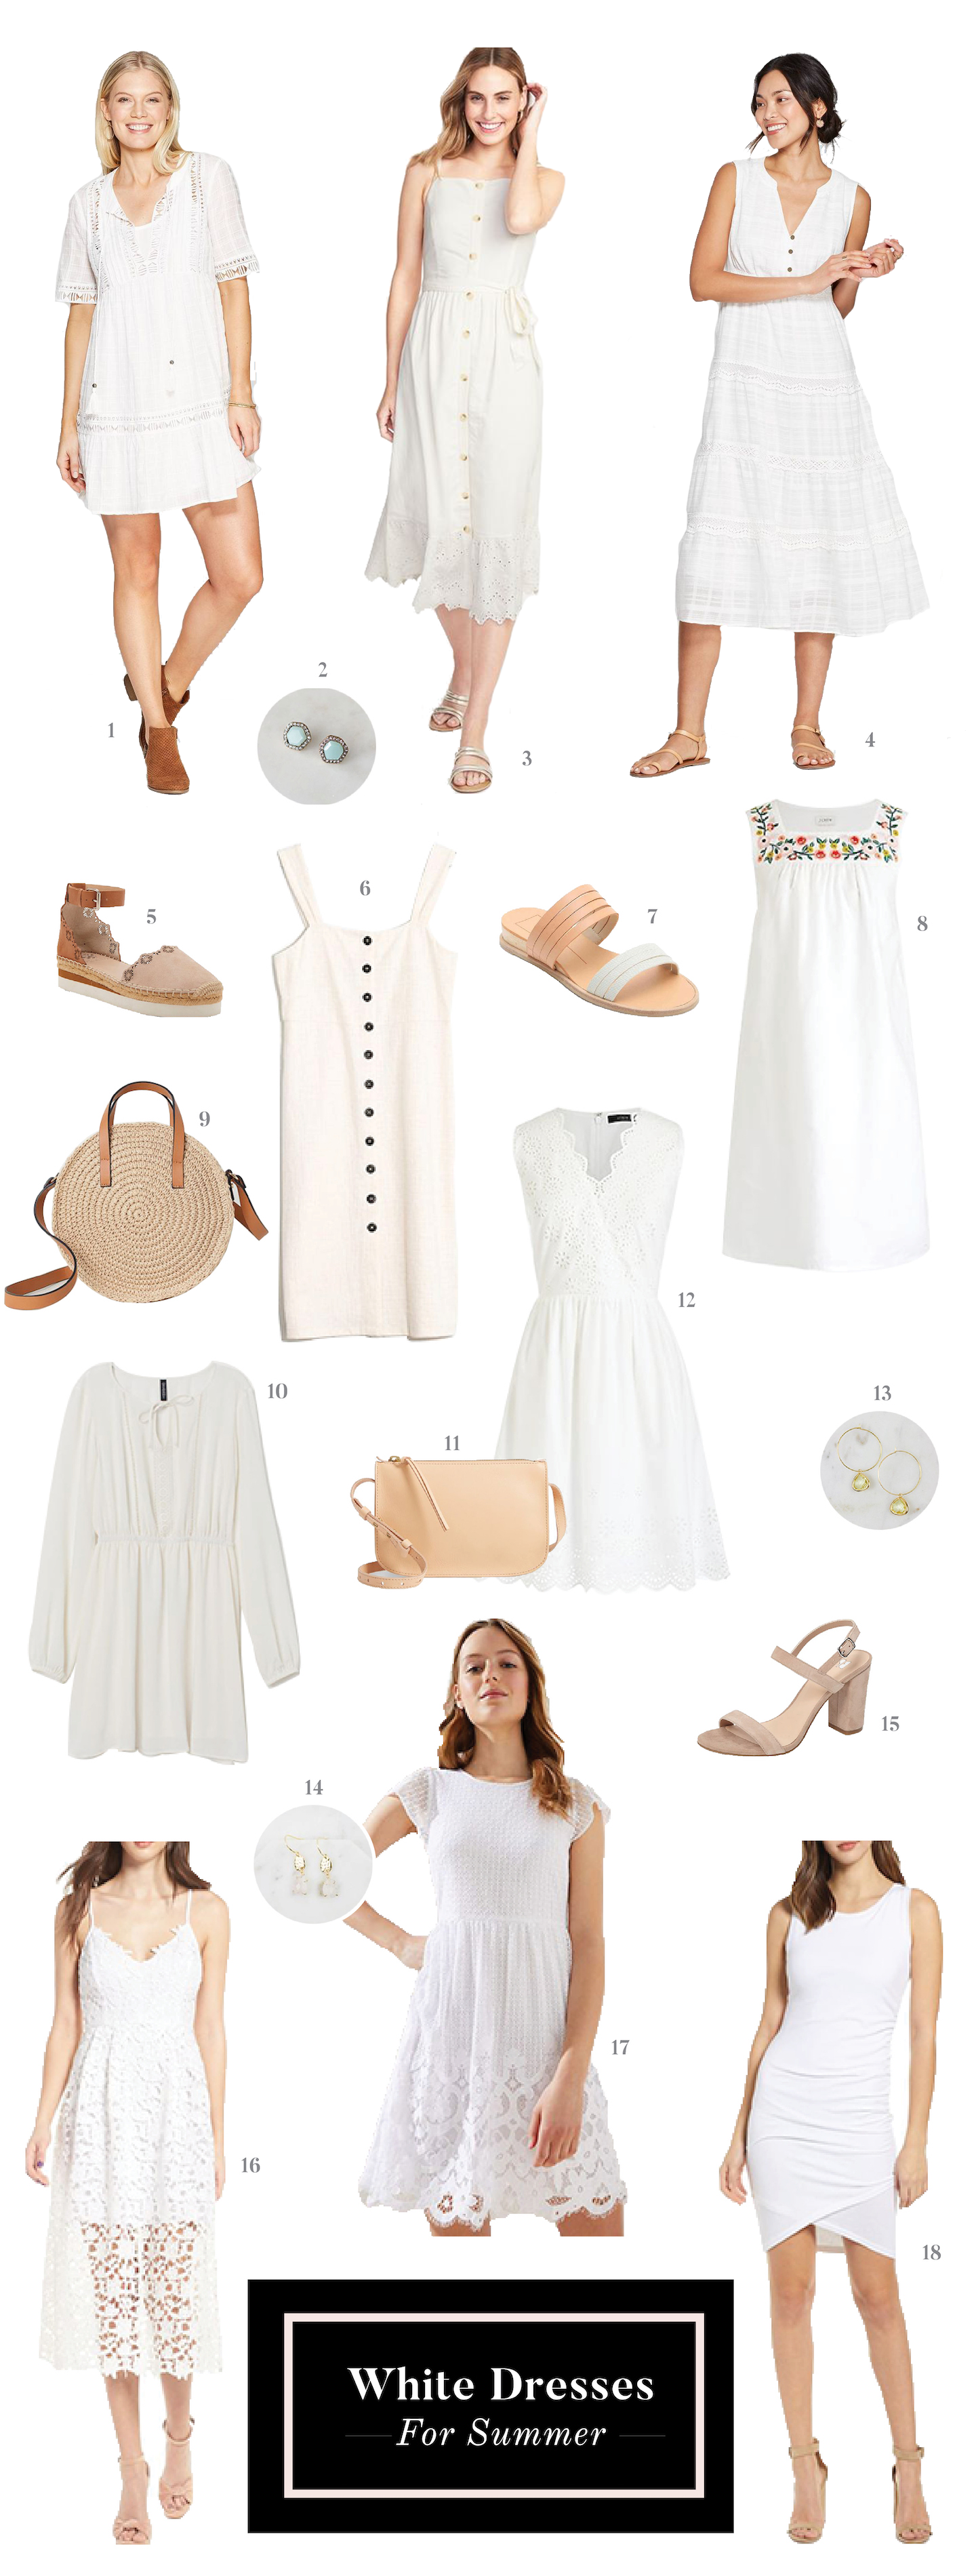 White Dresses for Summer – Lauren Loves